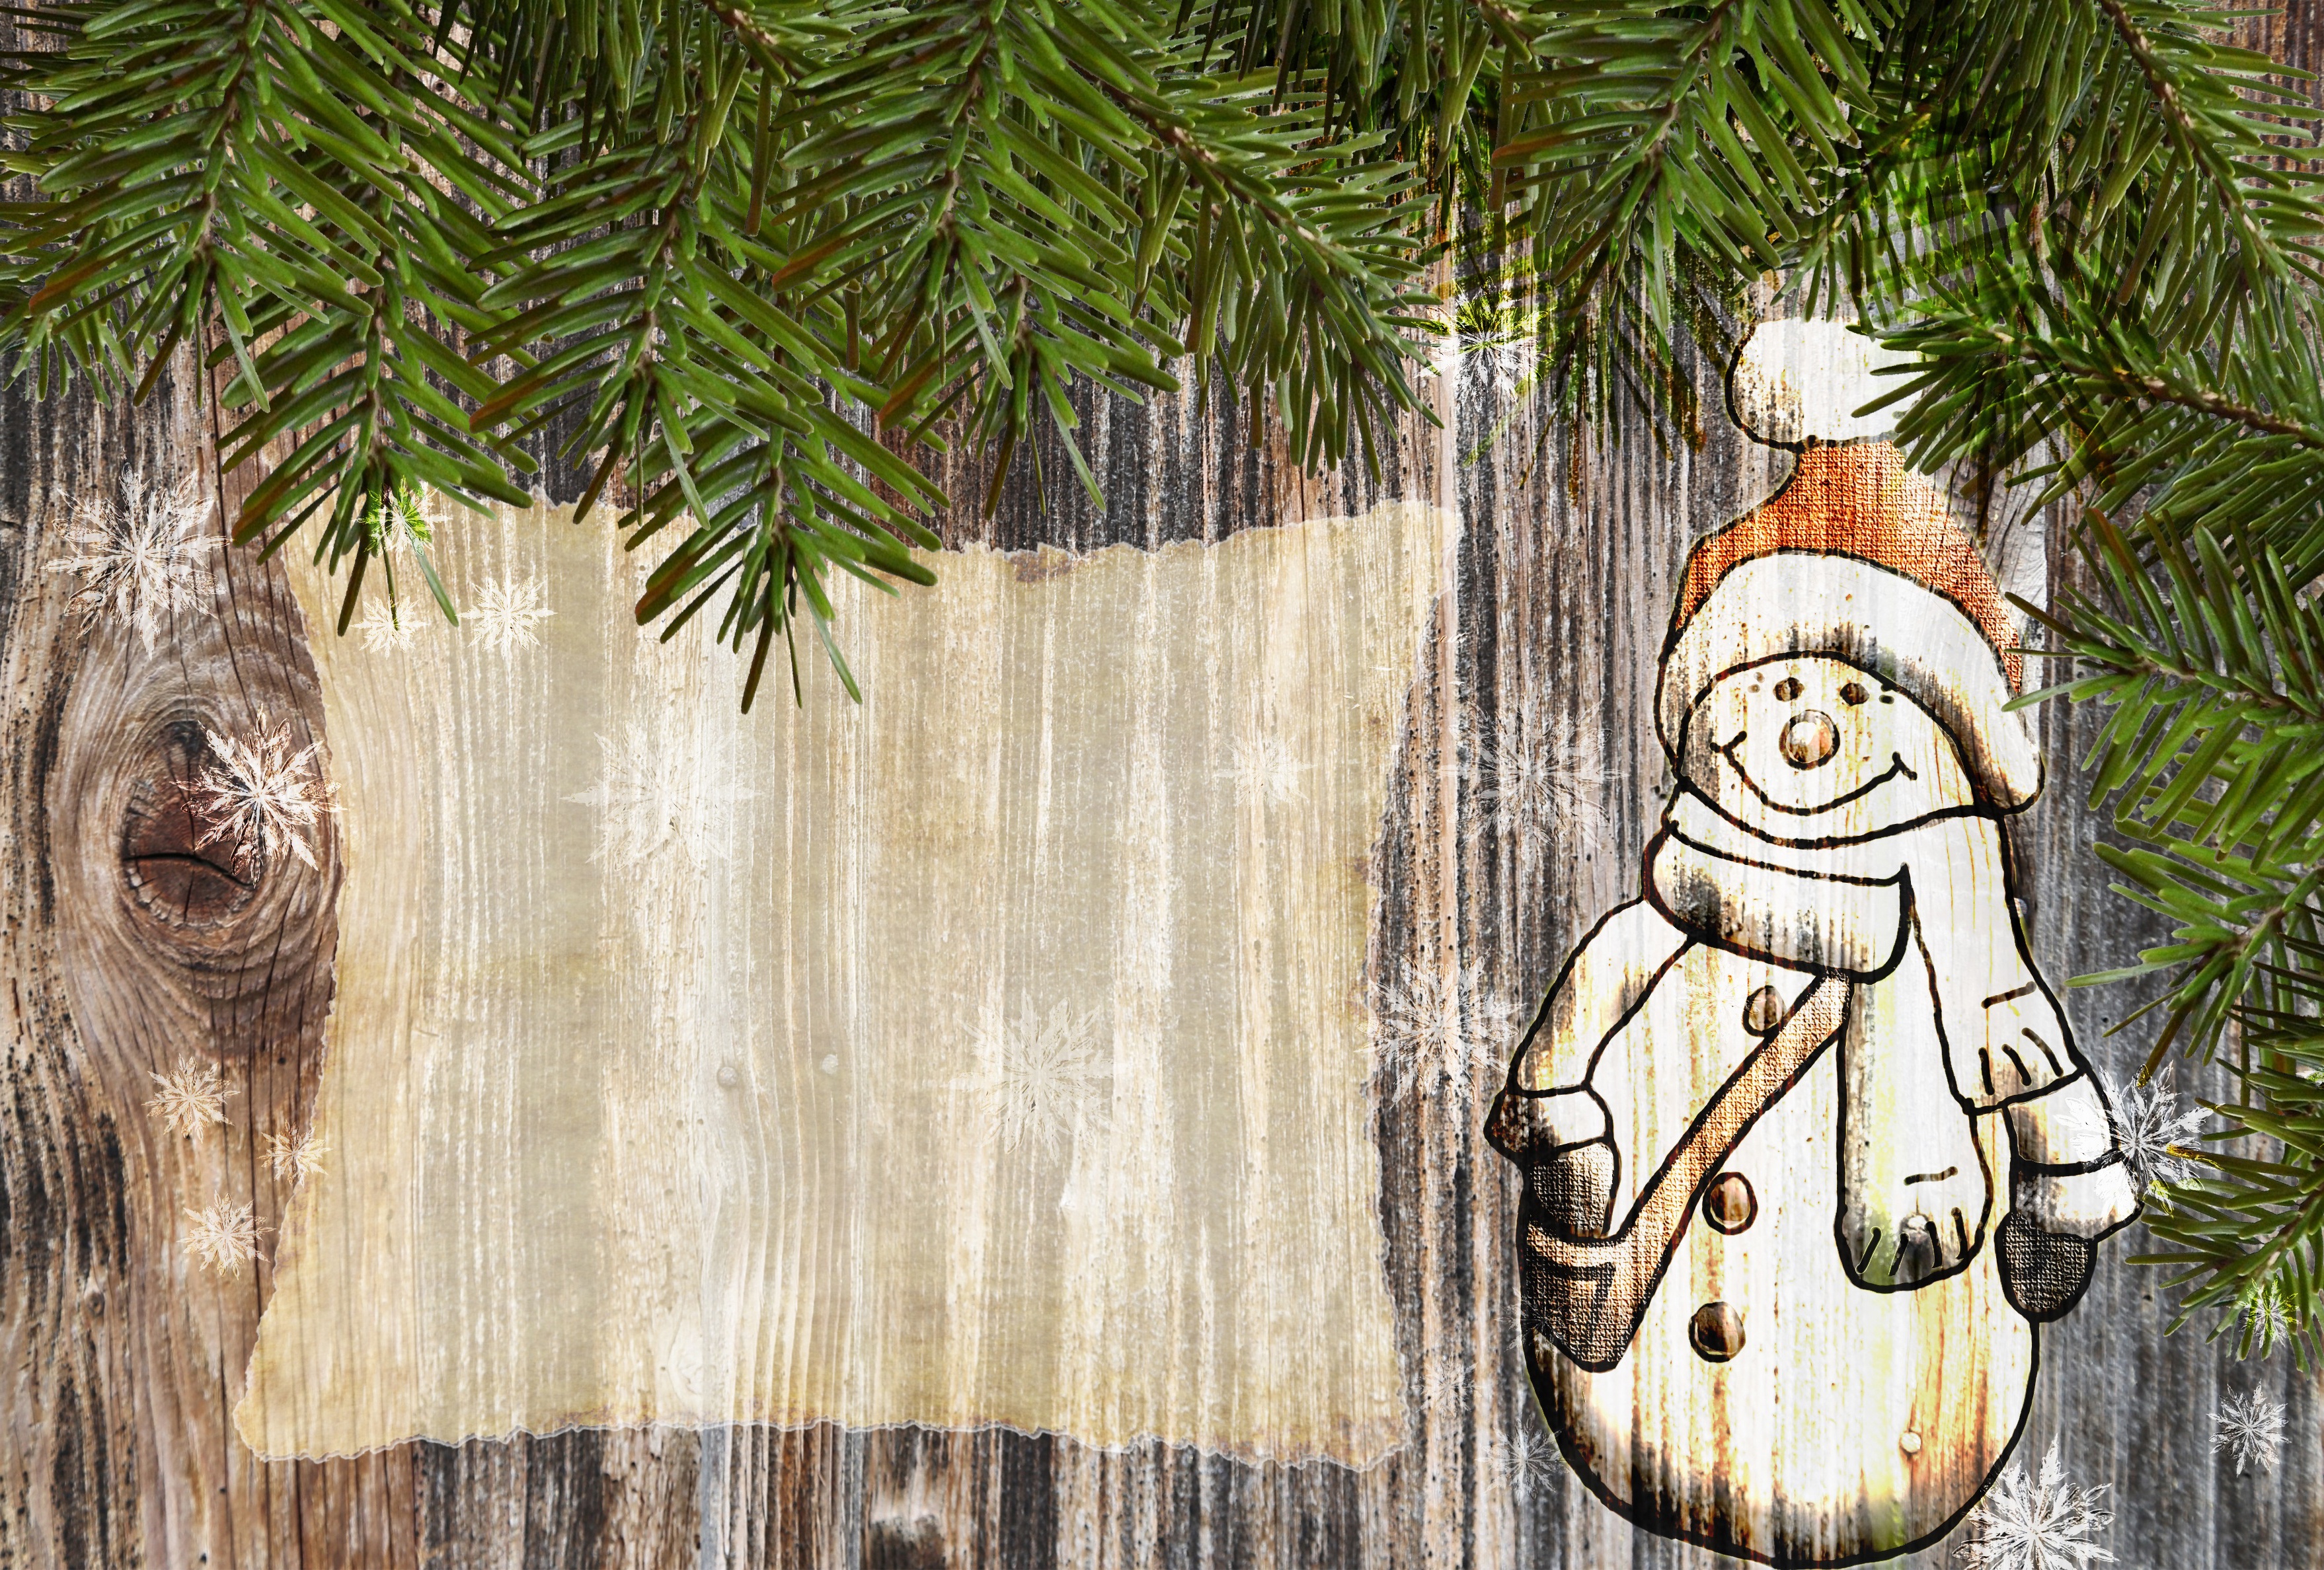 Скачать обои бесплатно Рождество, Рисунок, Снеговик, Художественные картинка на рабочий стол ПК